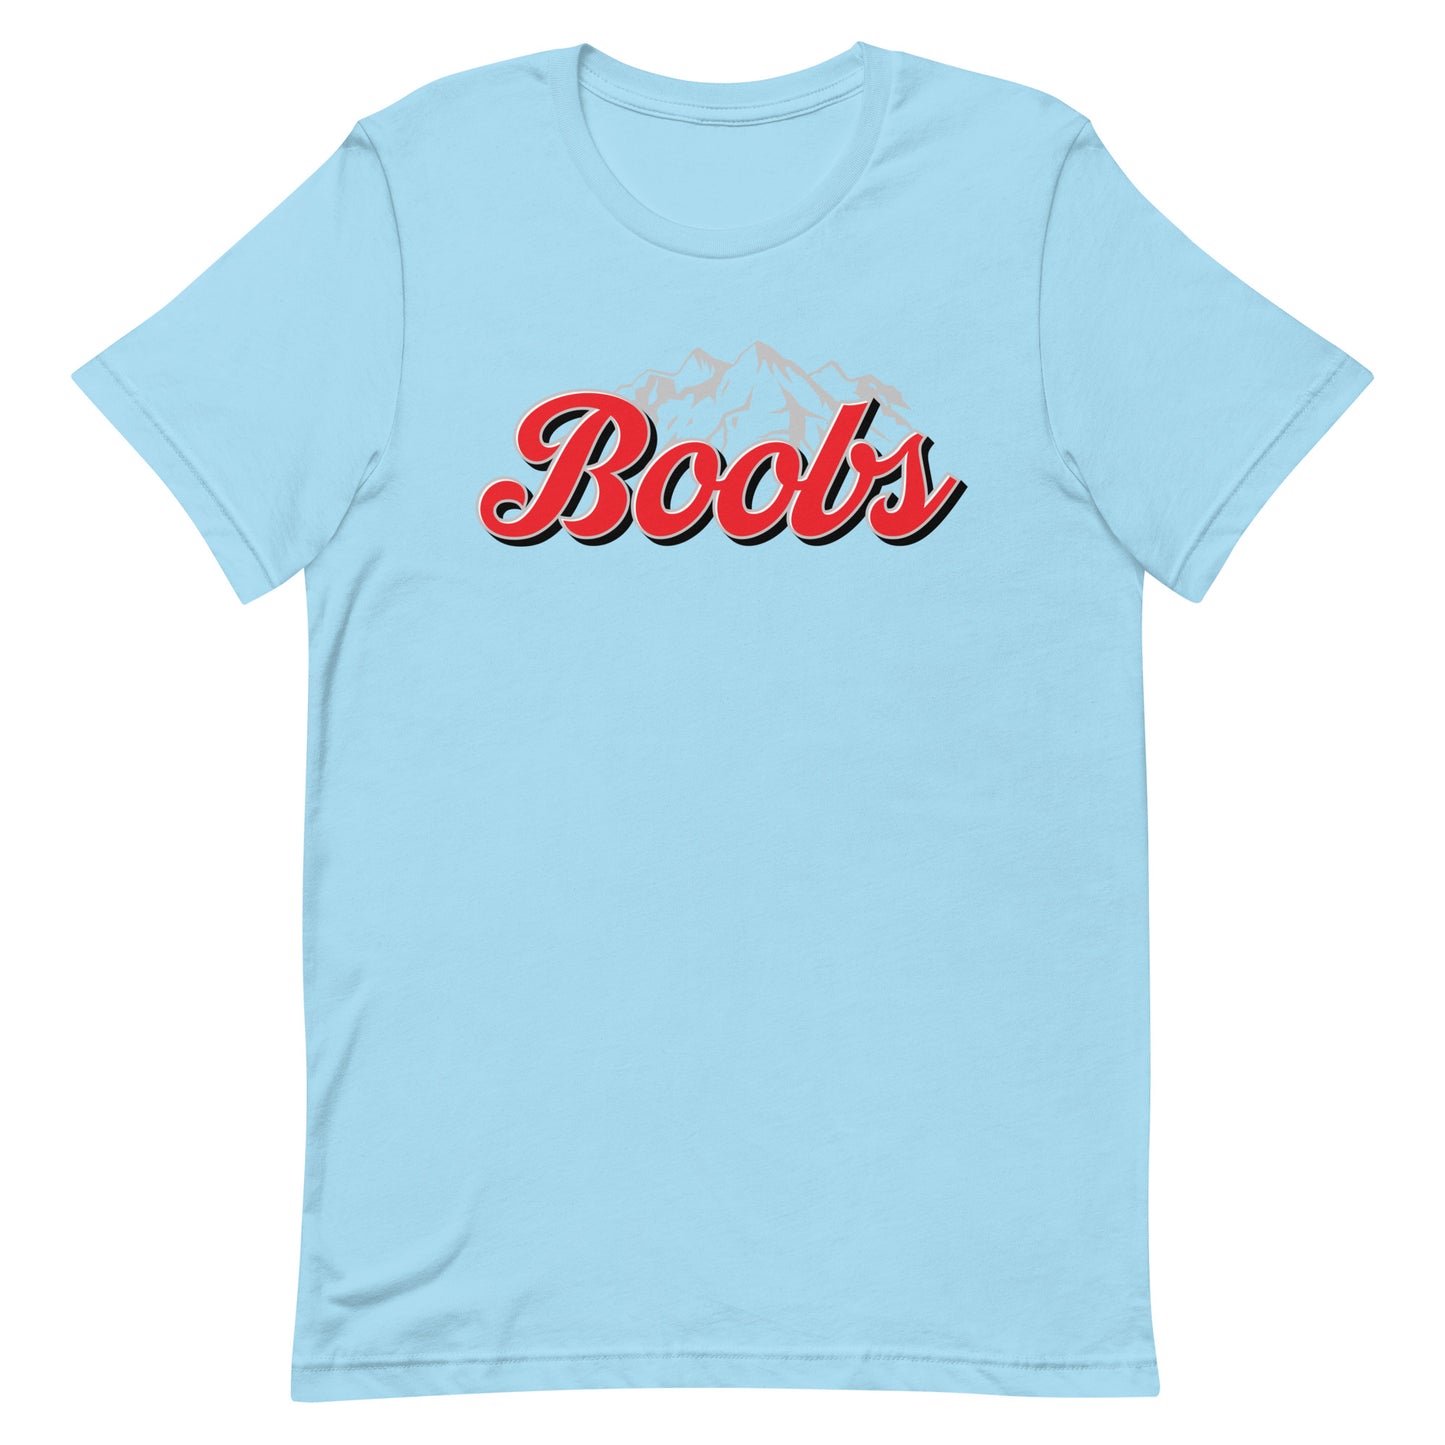 Boobs (Coors) Unisex t-shirt